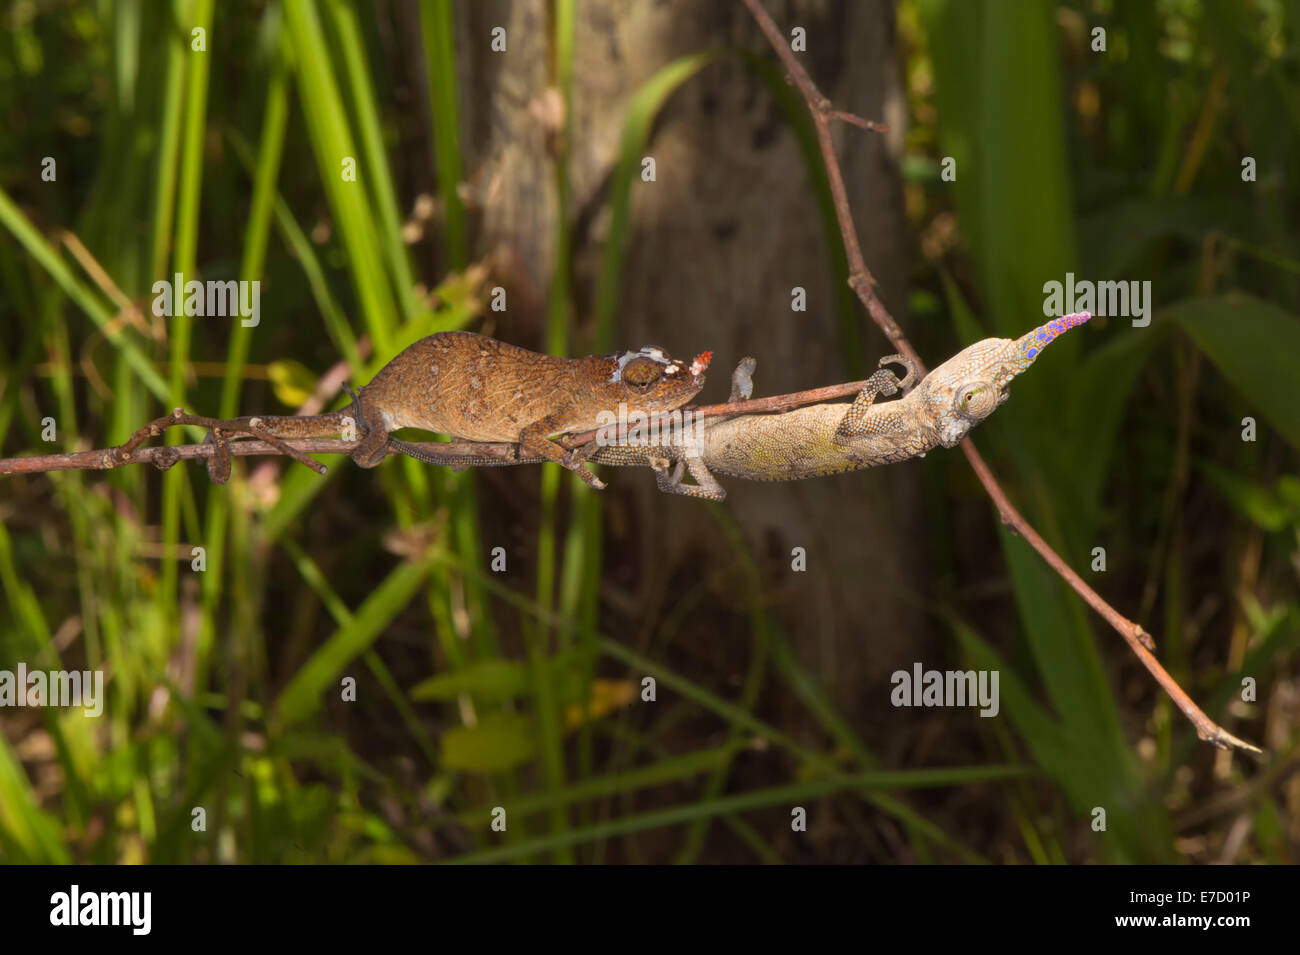 Couple of Blade chameleons (Calumma gallus), Madagascar Stock Photo